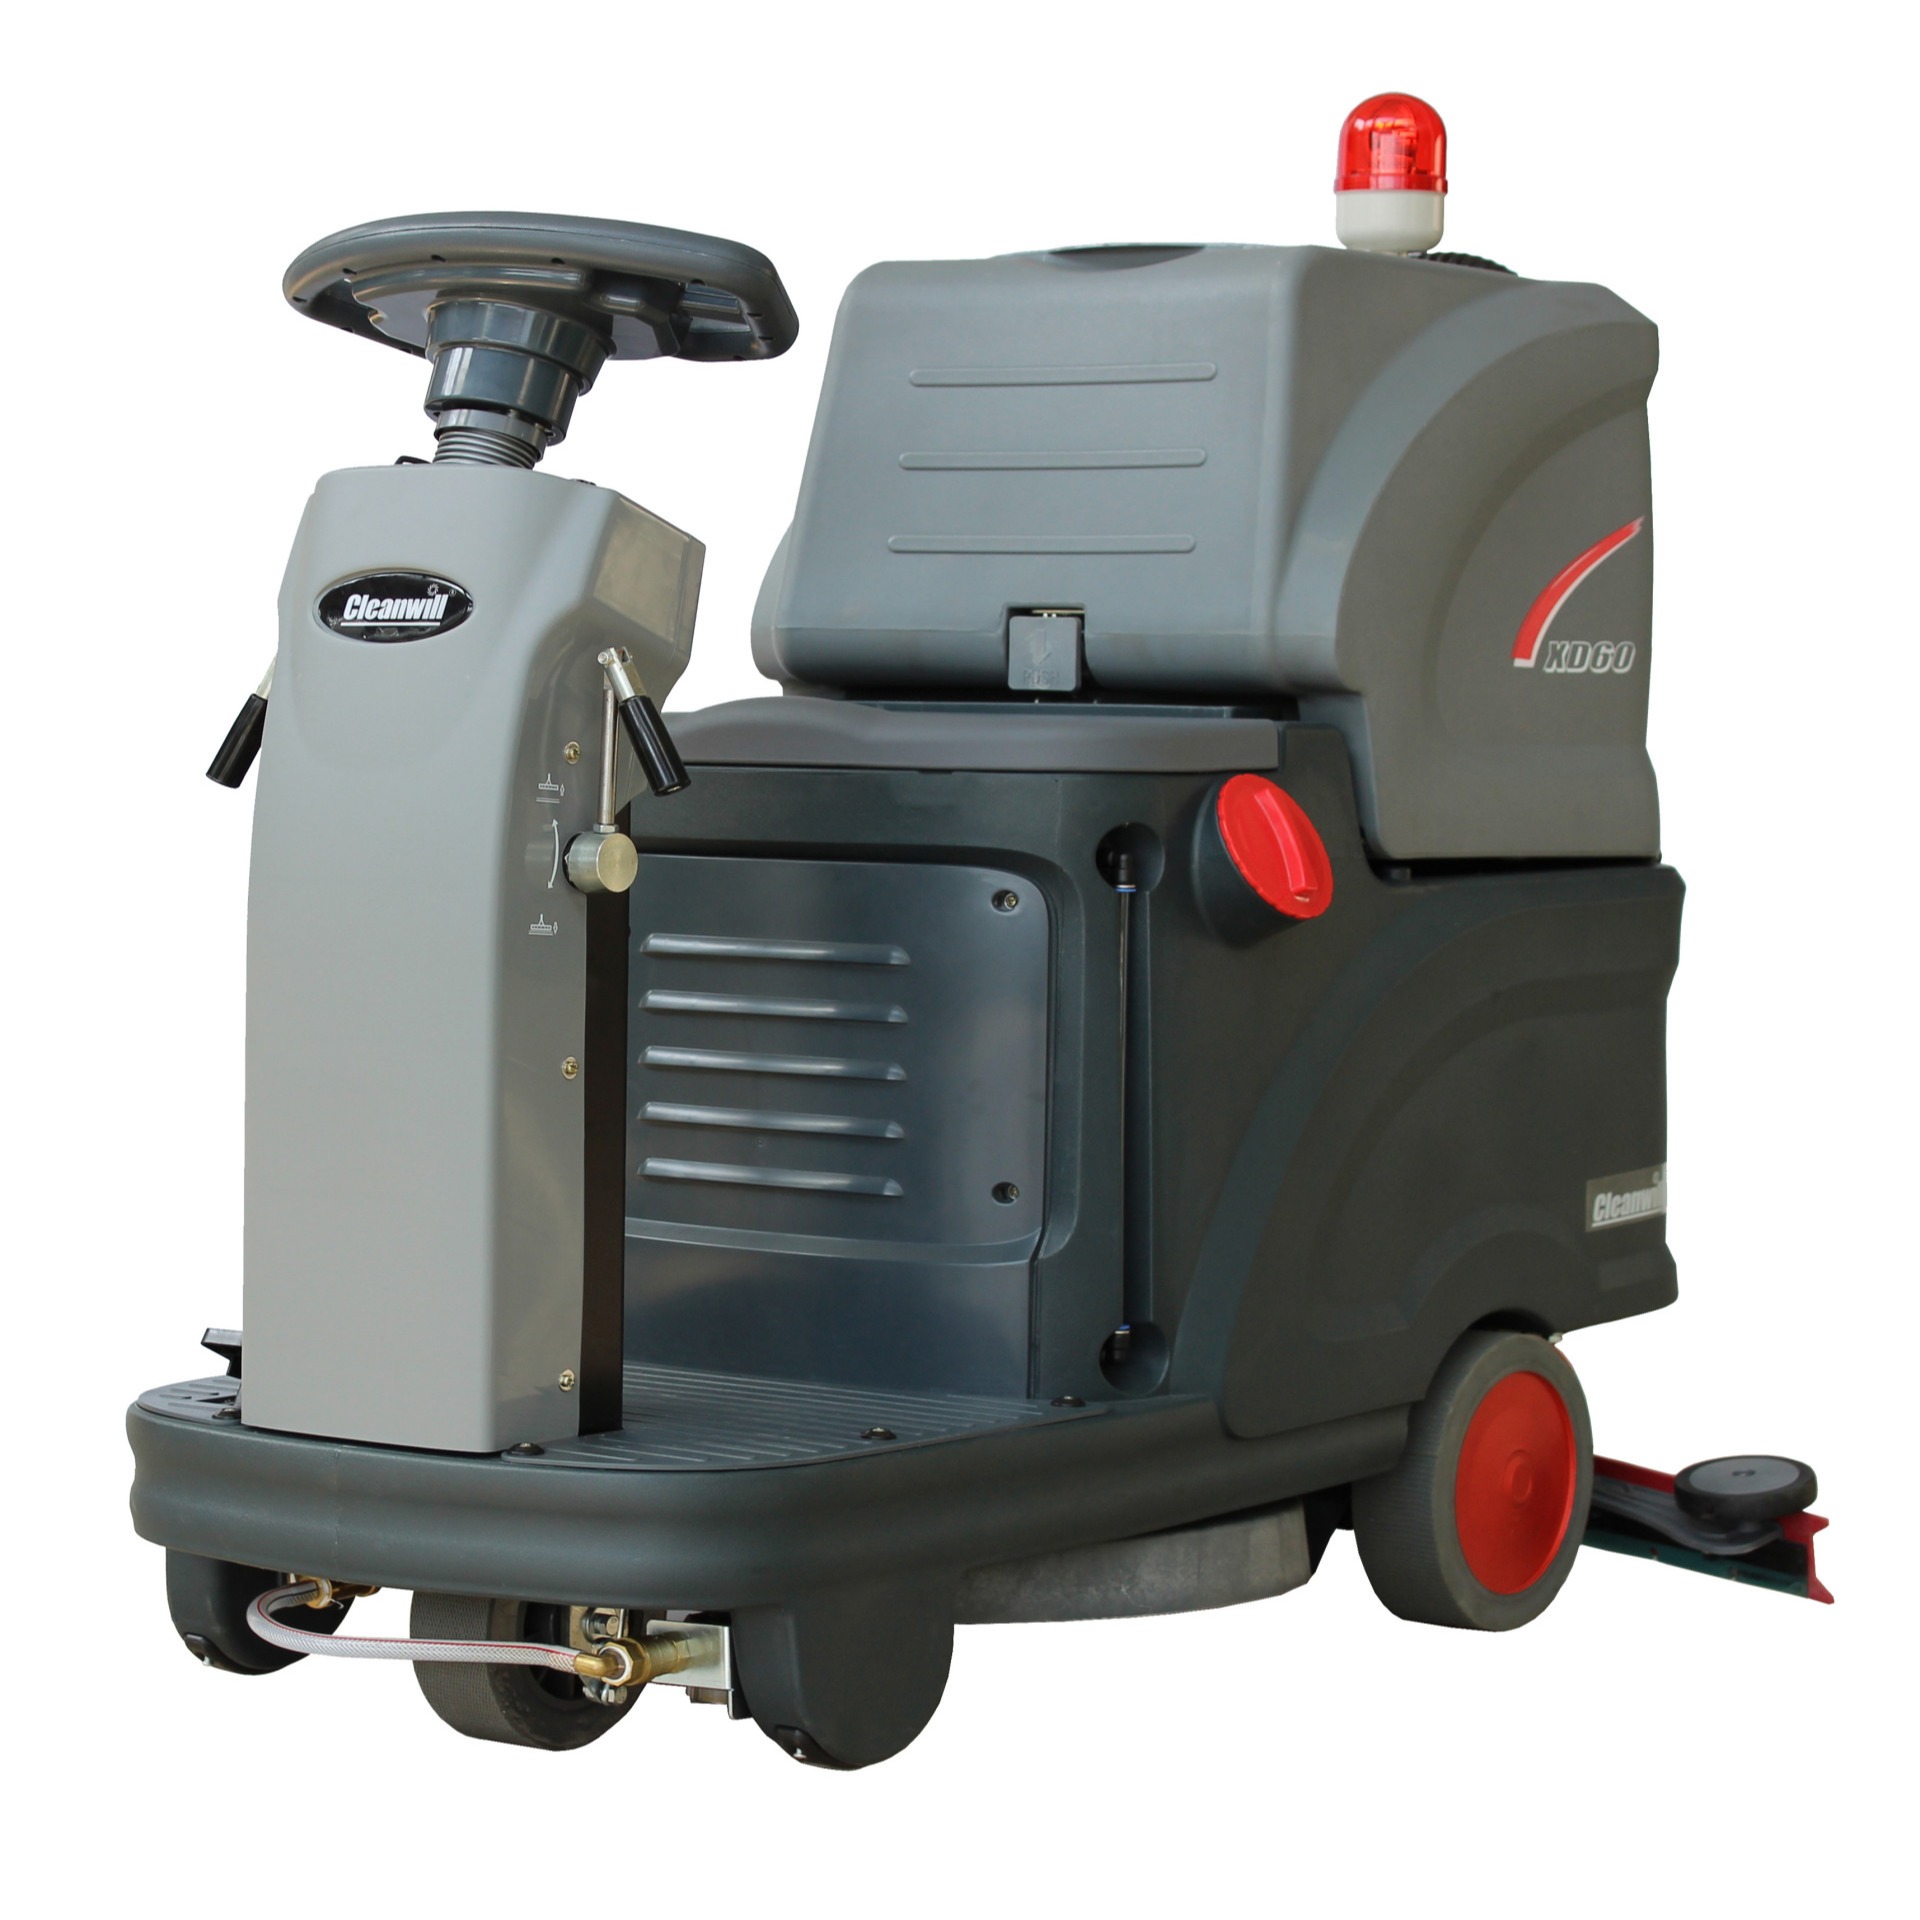 驾驶式 洗地机 机动灵活 小巧紧凑型 清洁擦地车 cleanwill/克力威 XD60图片